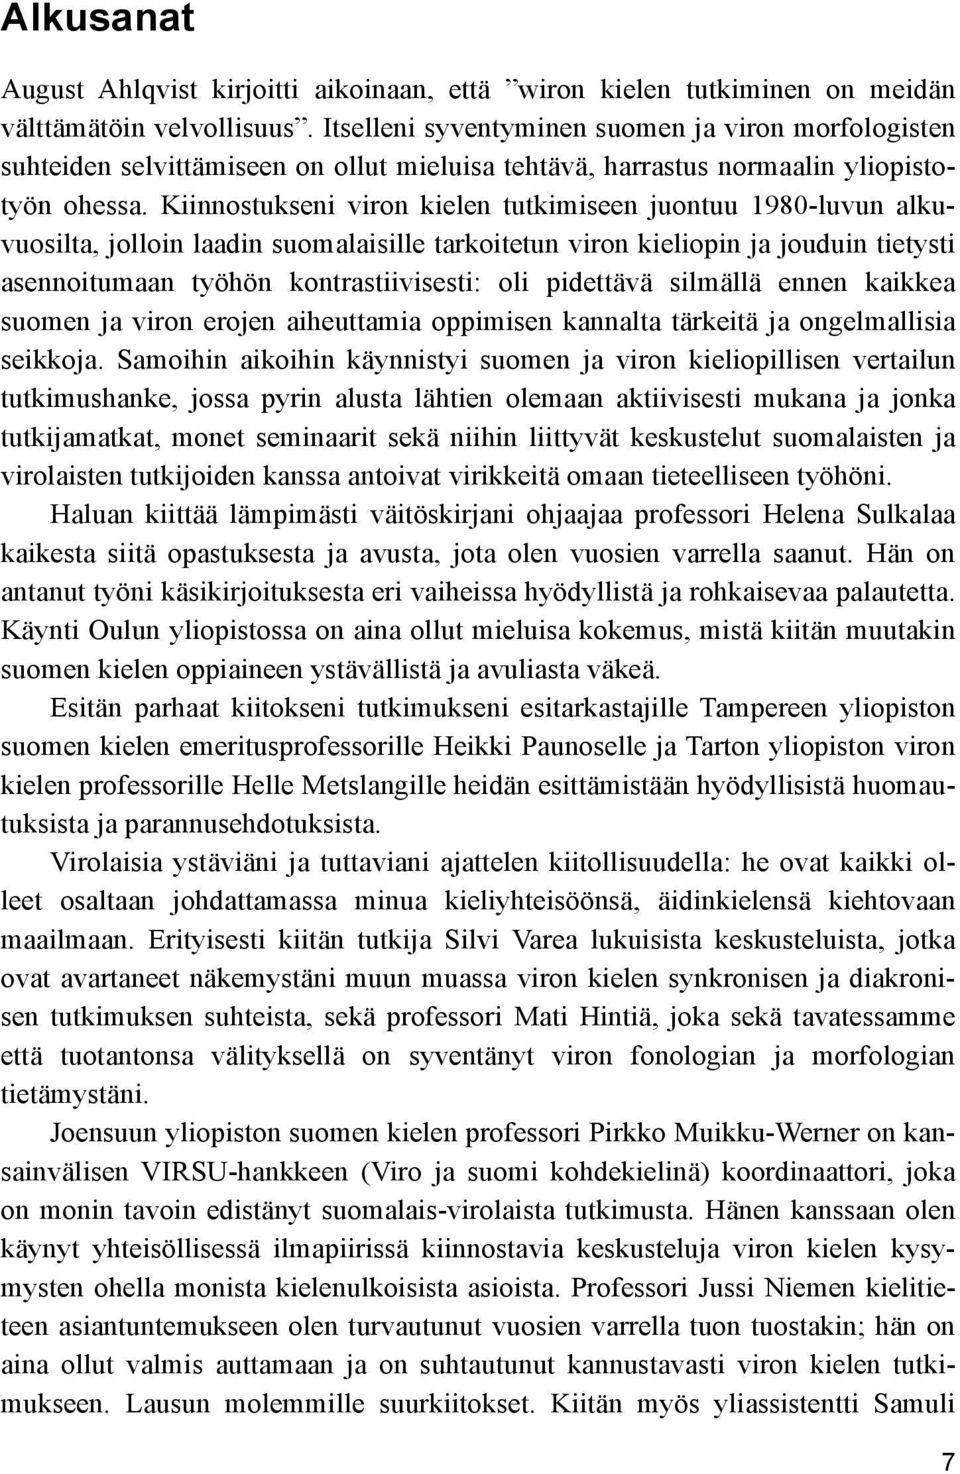 Kiinnostukseni viron kielen tutkimiseen juontuu 1980-luvun alkuvuosilta, jolloin laadin suomalaisille tarkoitetun viron kieliopin ja jouduin tietysti asennoitumaan työhön kontrastiivisesti: oli